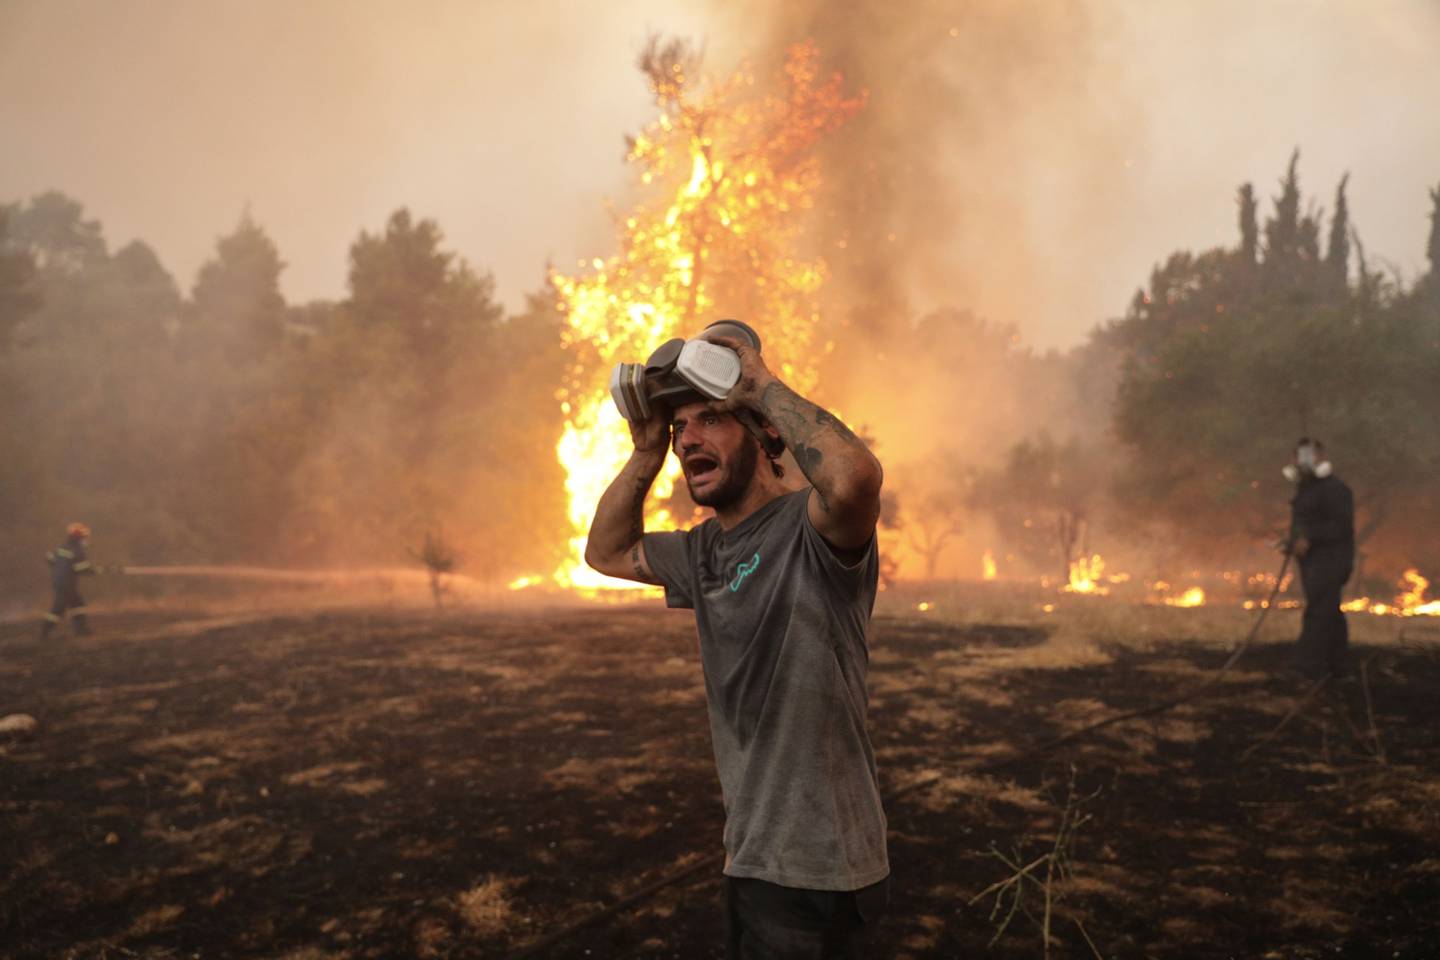 Un incendio forestal al norte de Atenas obligó a los residentes a abandonar sus hogares durante una ola de calor en Grecia.dfd